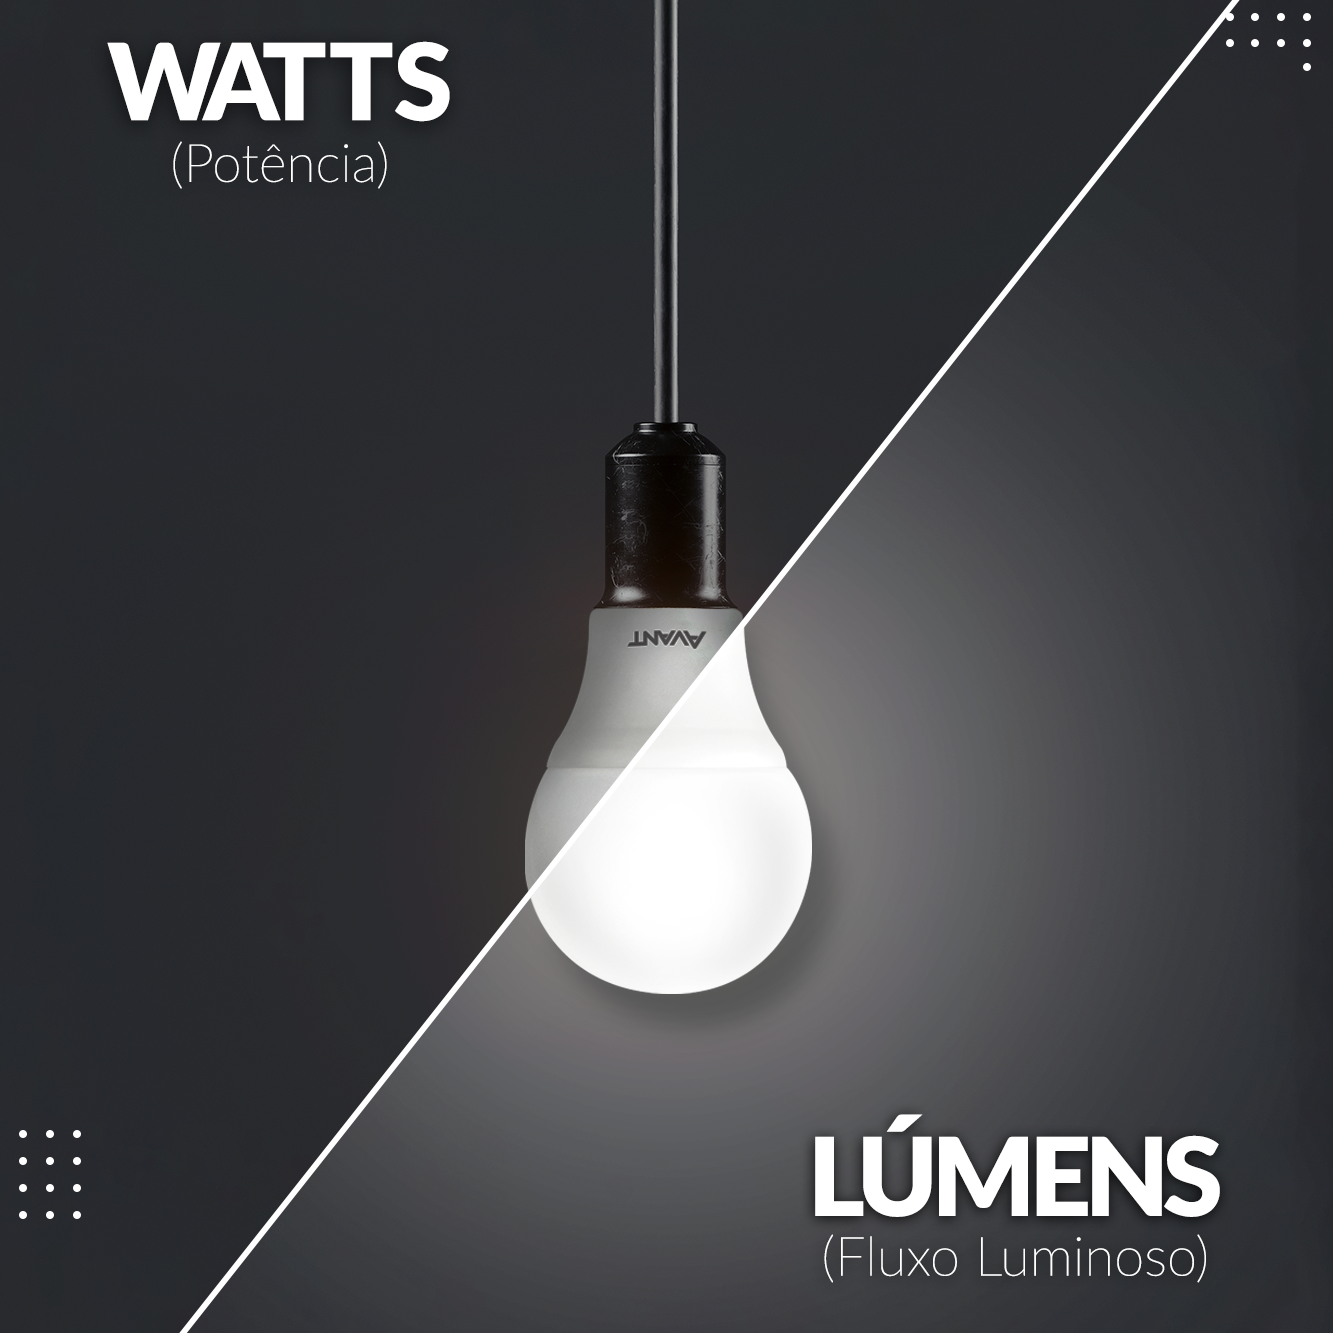 Watts x Lúmens: Qual a diferença?